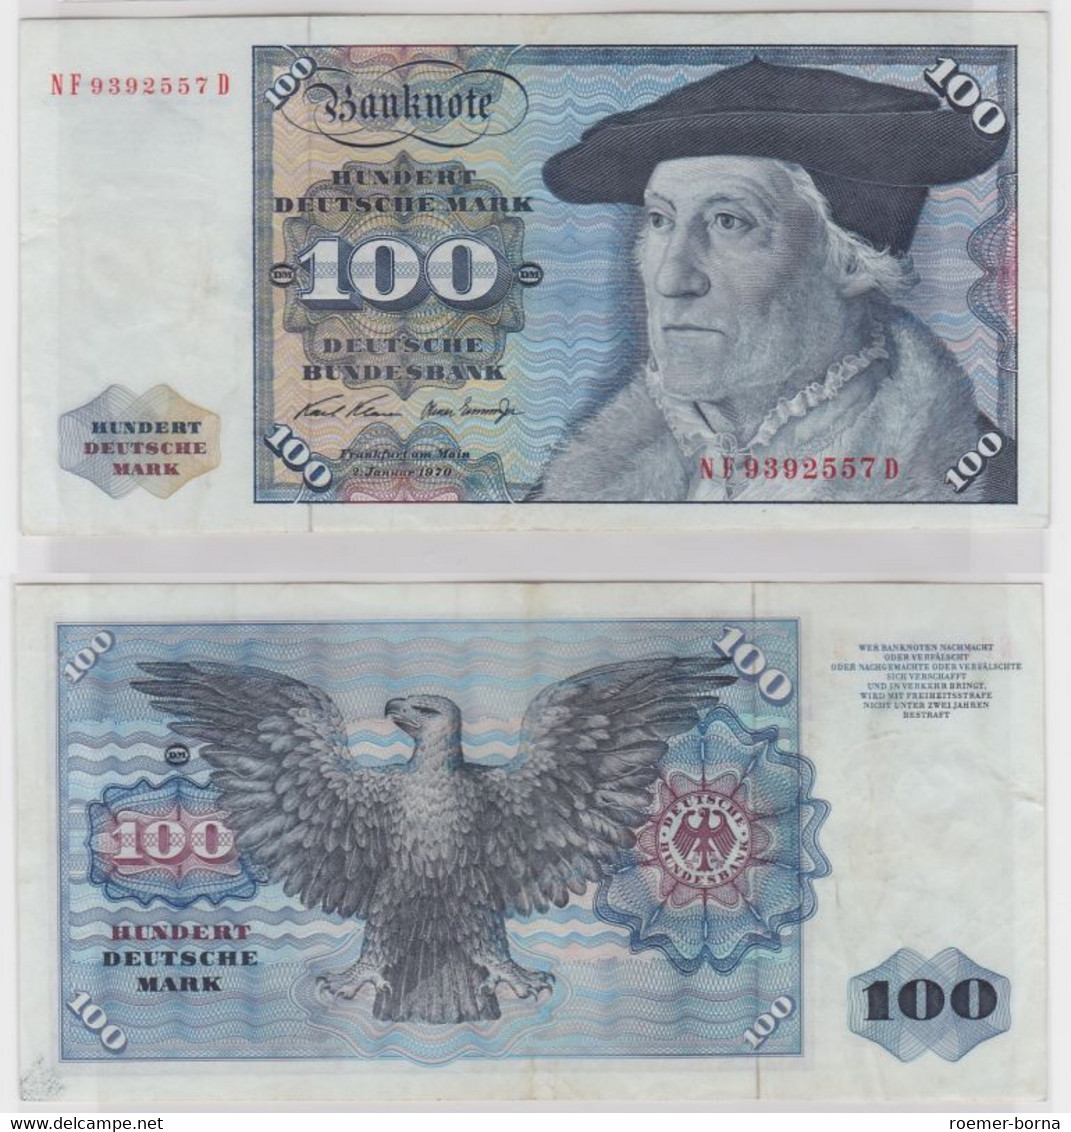 T146305 Banknote 100 DM Deutsche Mark Ro. 273b Schein 2.Jan 1970 KN NF 9392557 D - 100 DM